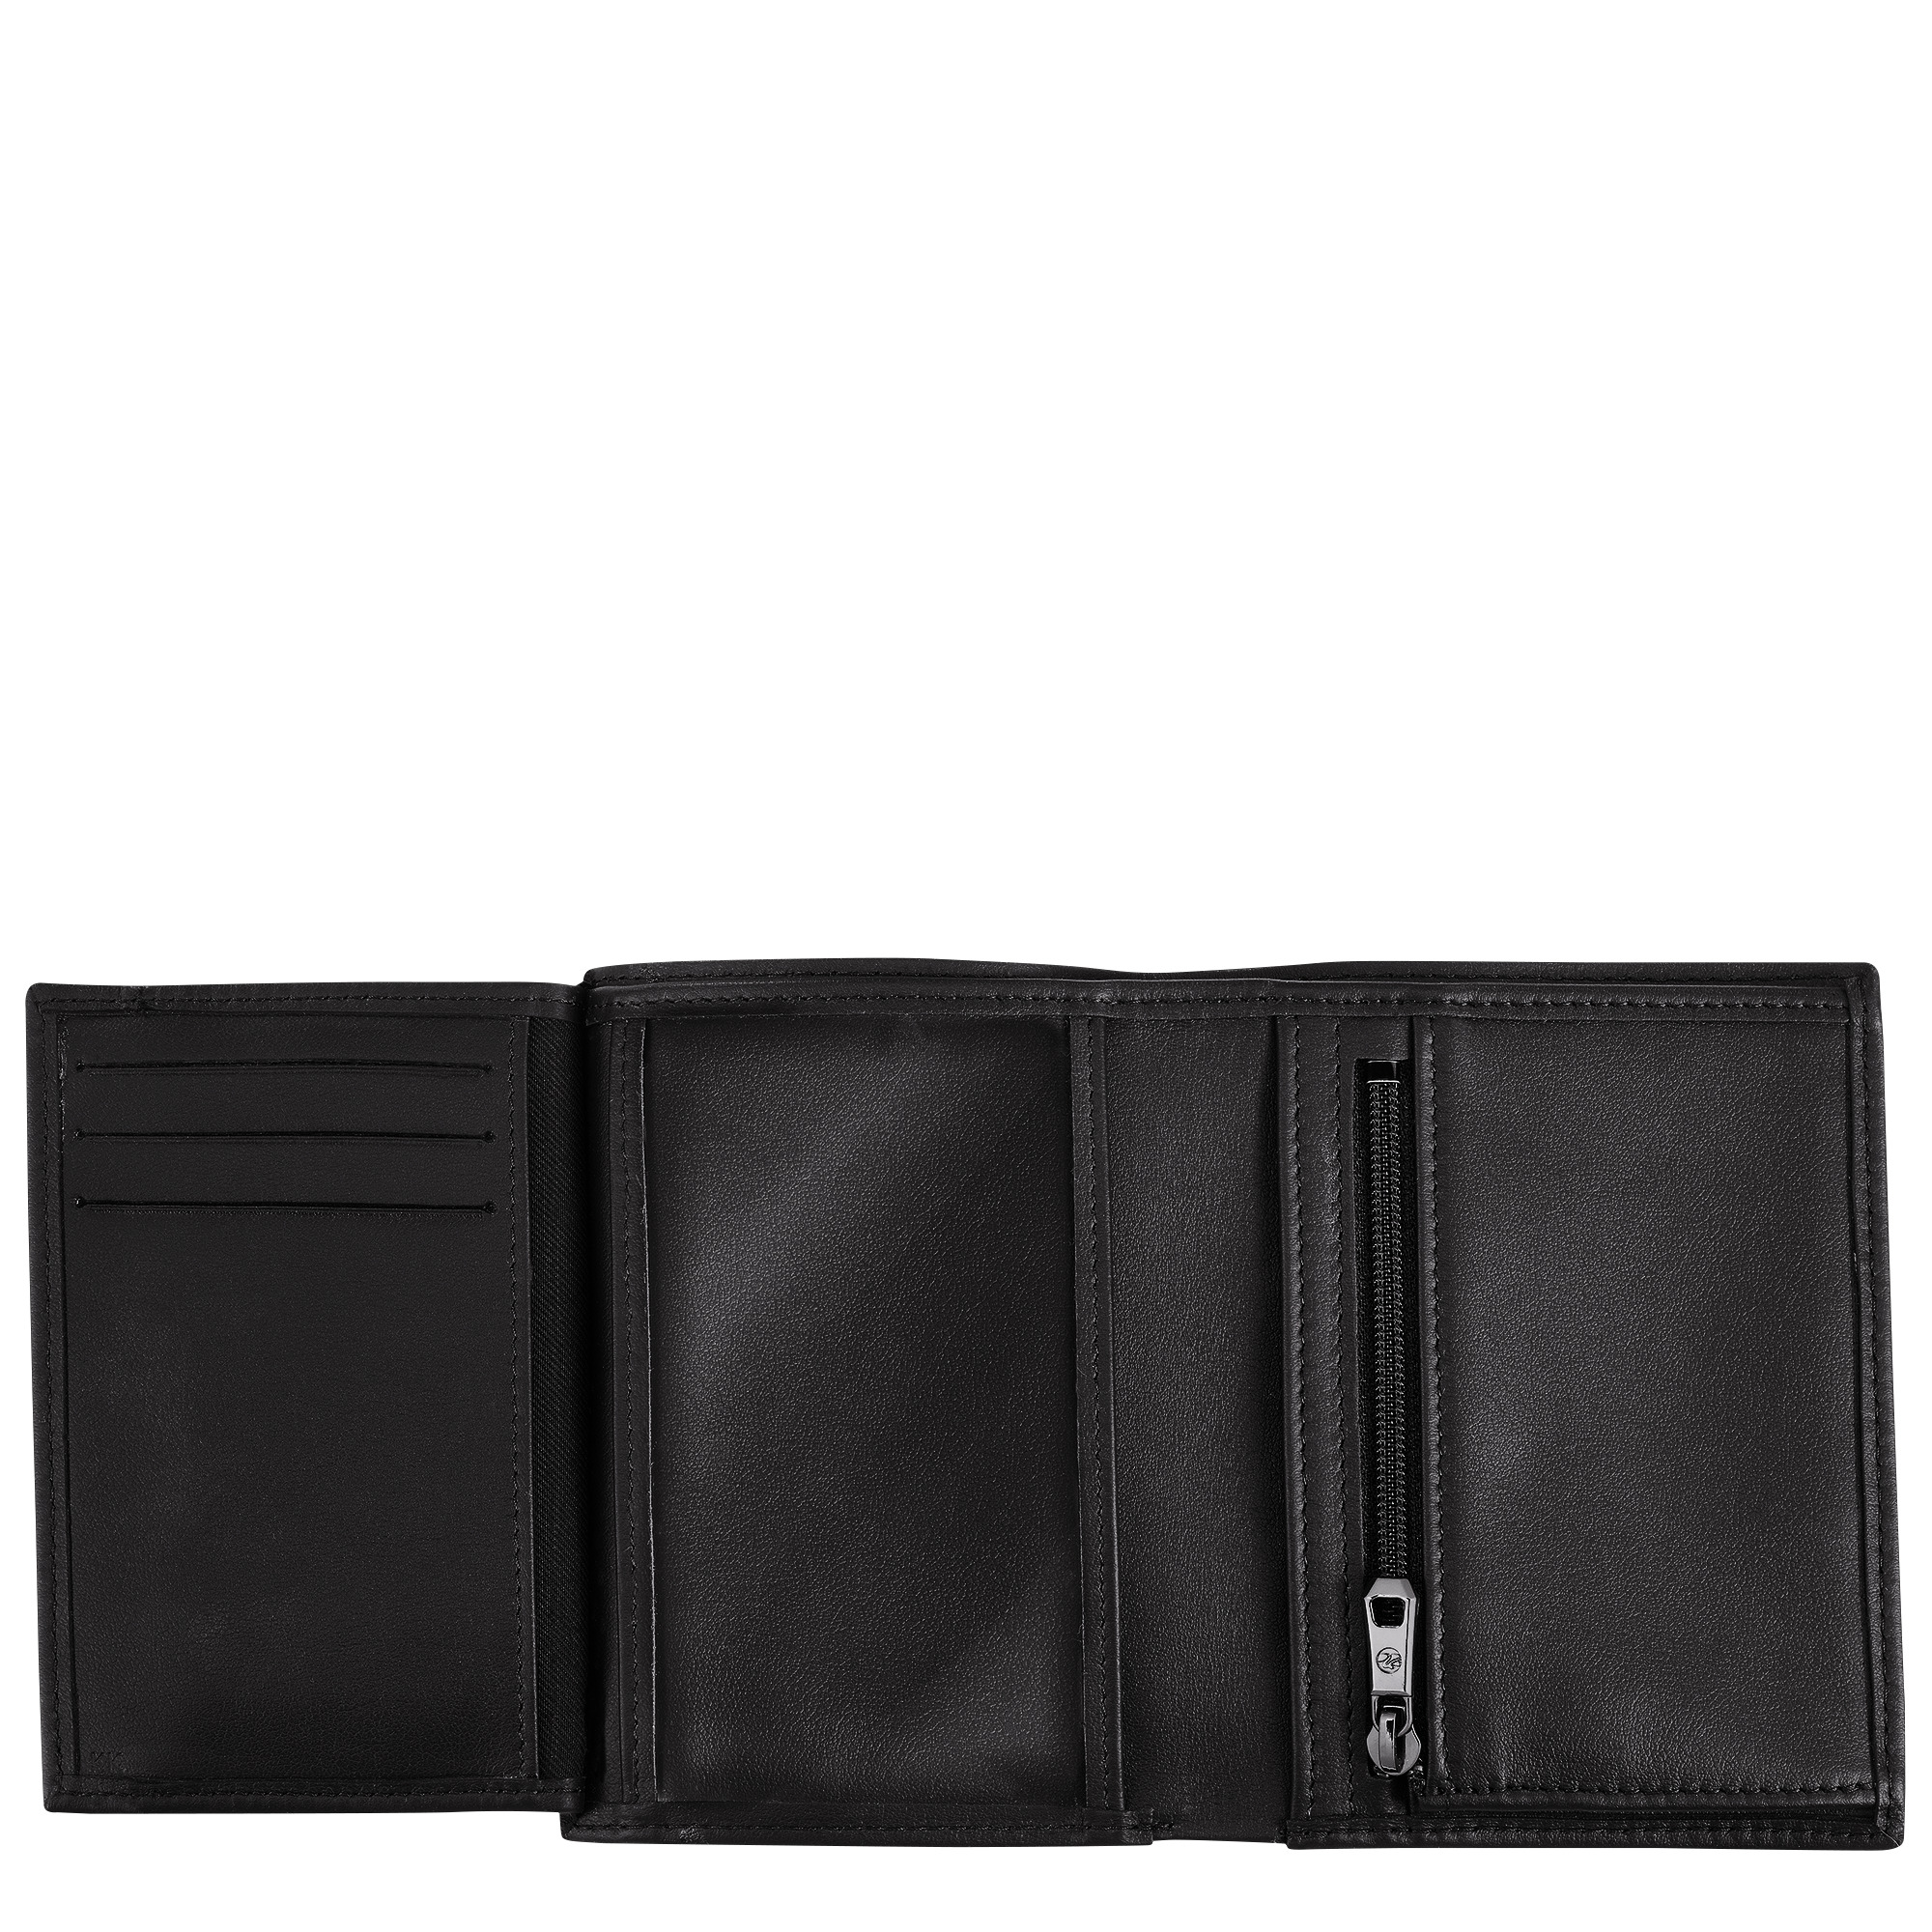 Longchamp sur Seine Wallet Black - Leather - 3